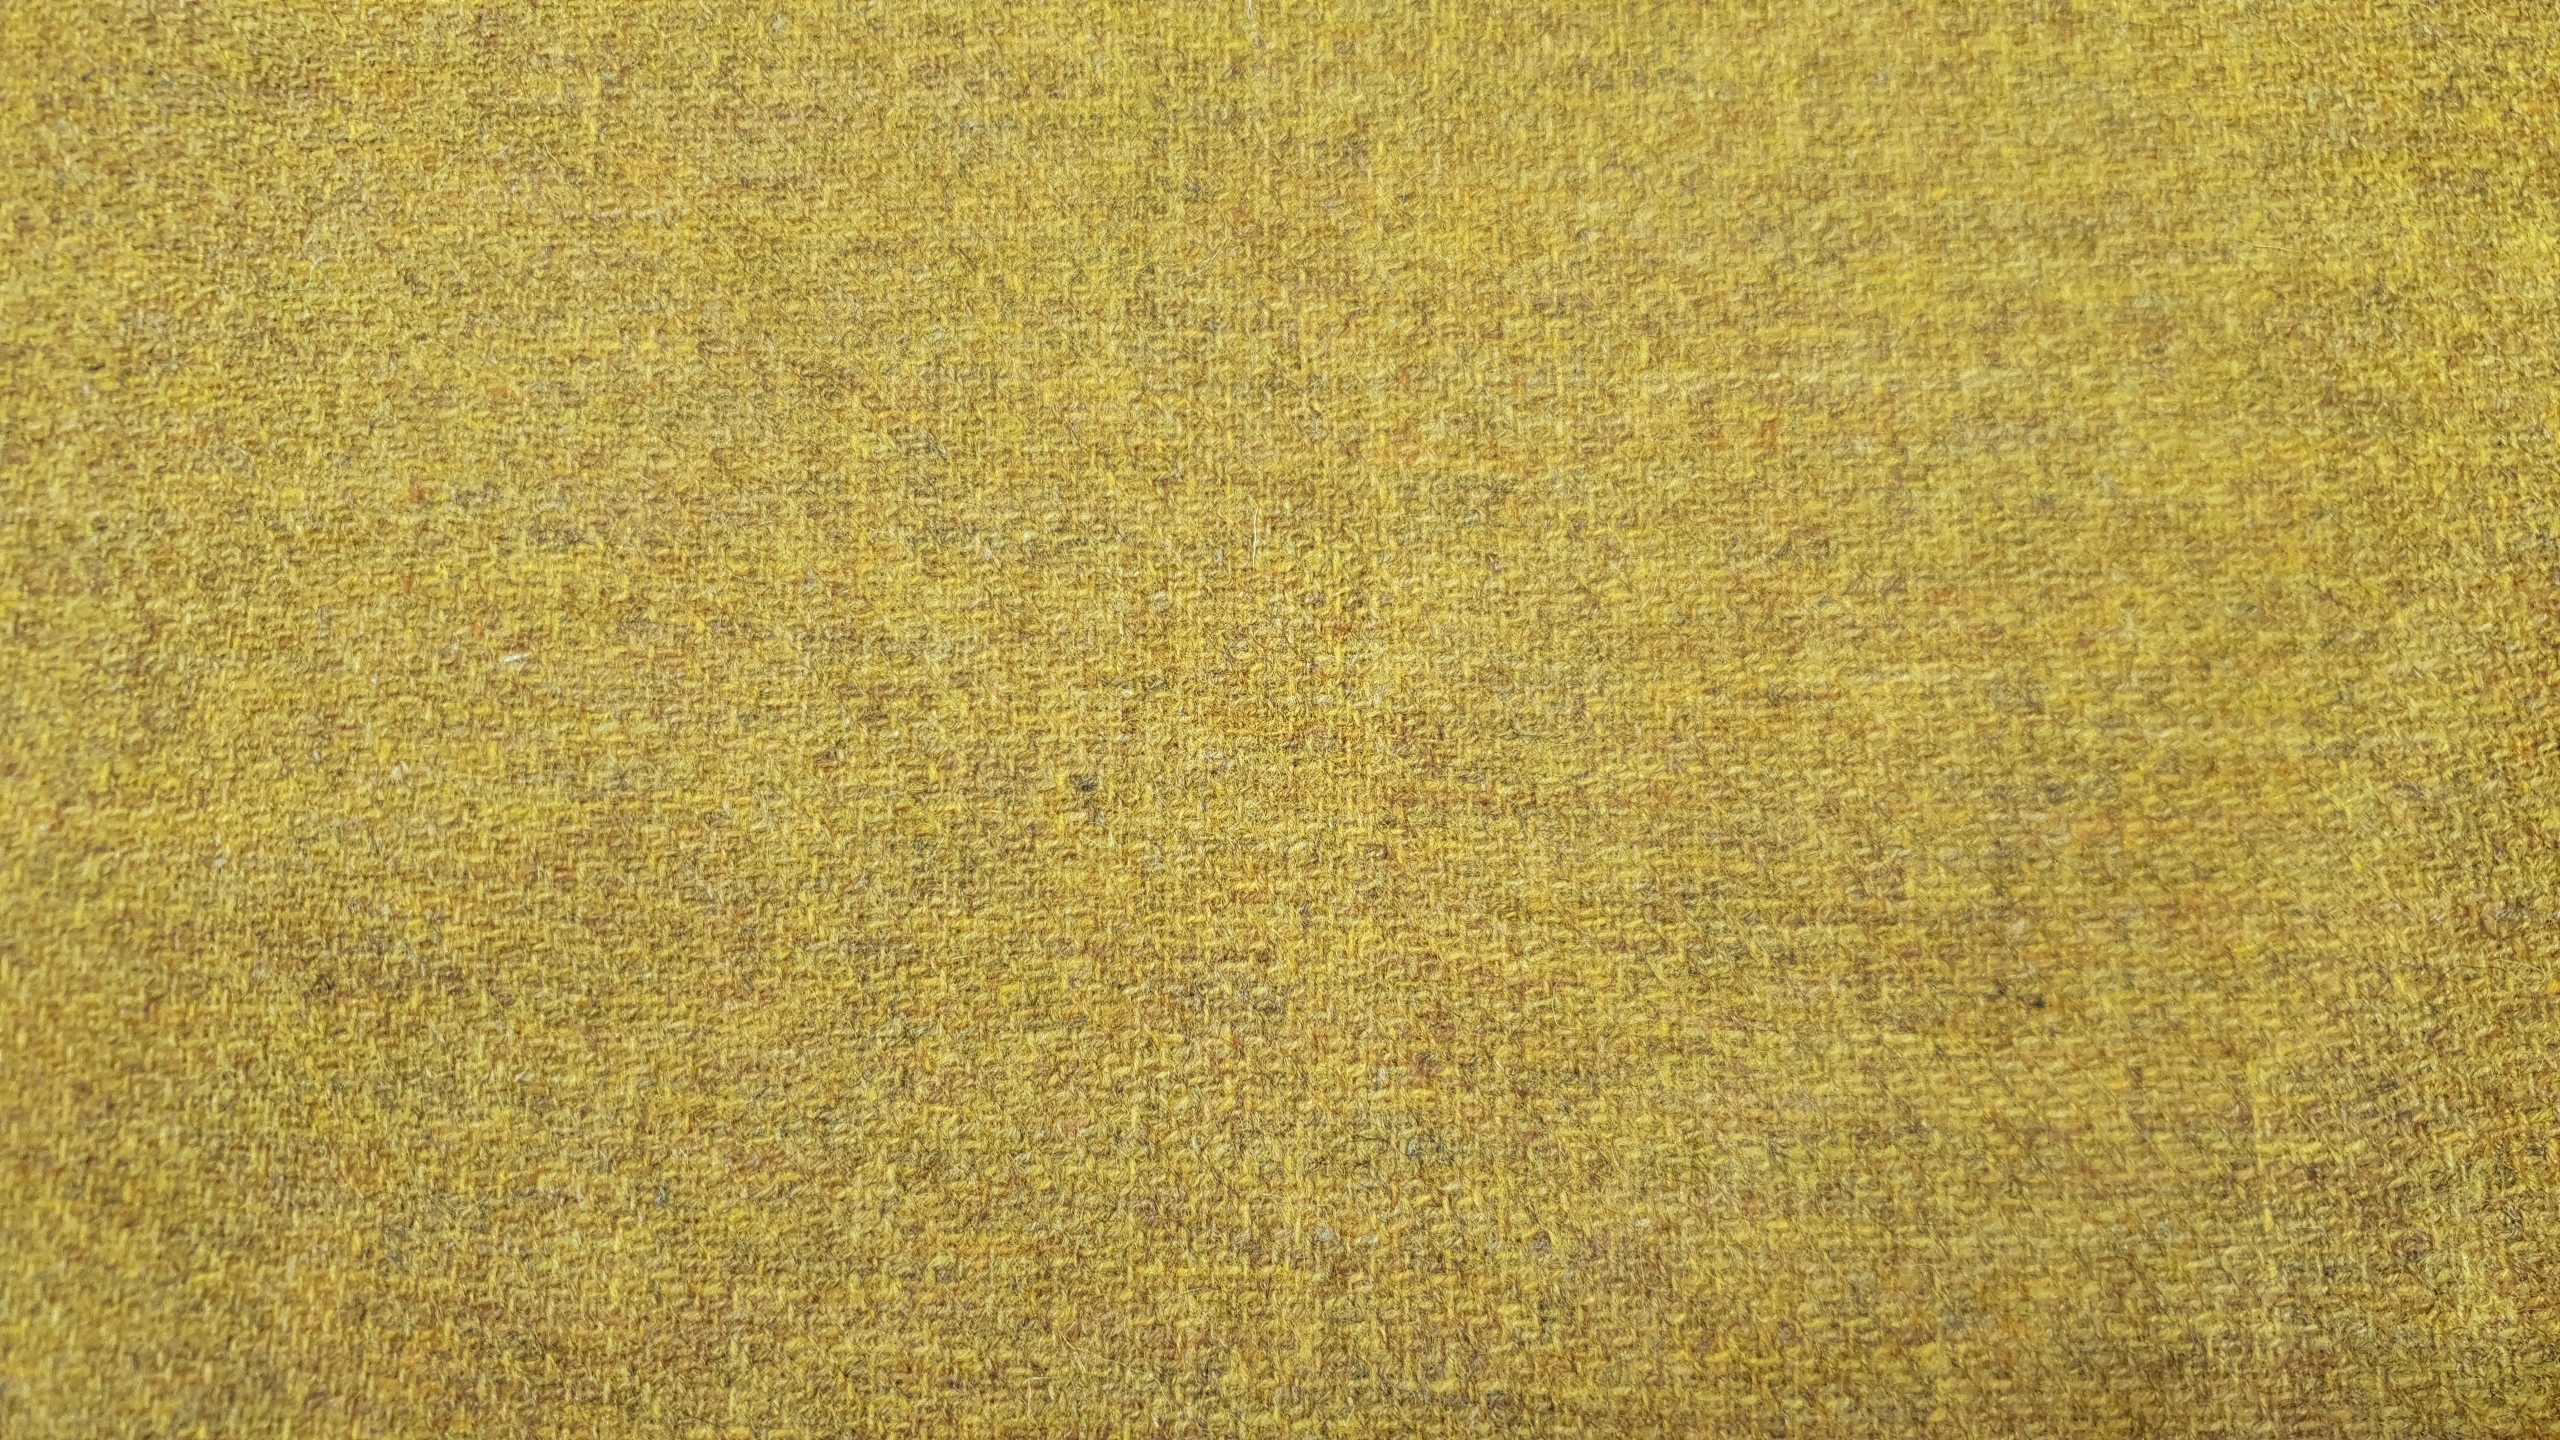 SHETLAND wool tweed- yellow 17